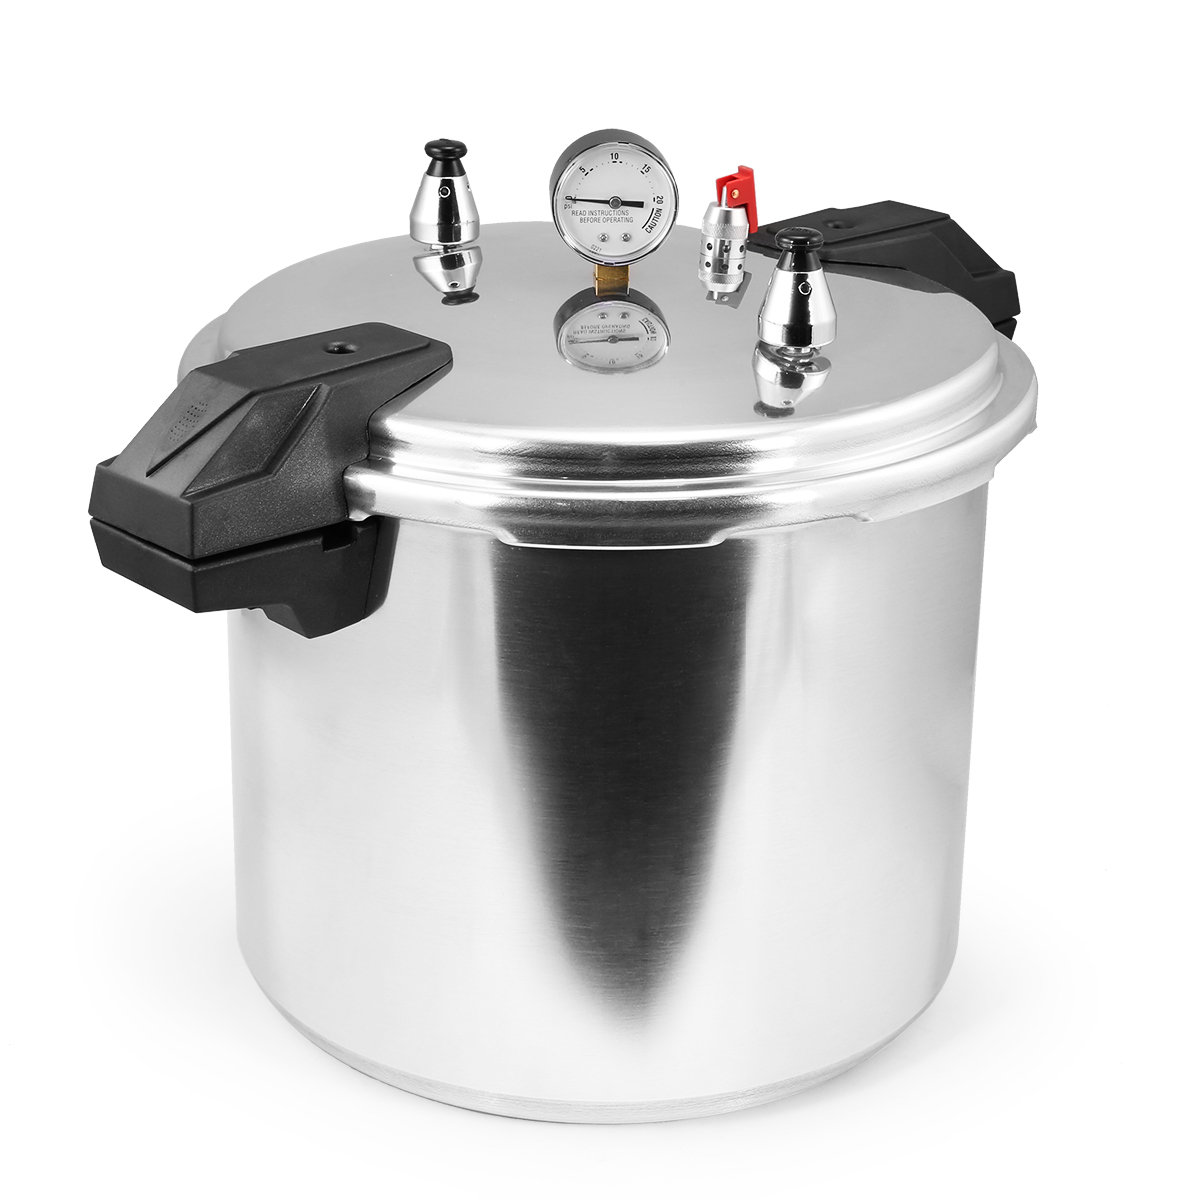 Zavor EZLock Stainless Steel 12 Quart Pressure Cooker - Canning